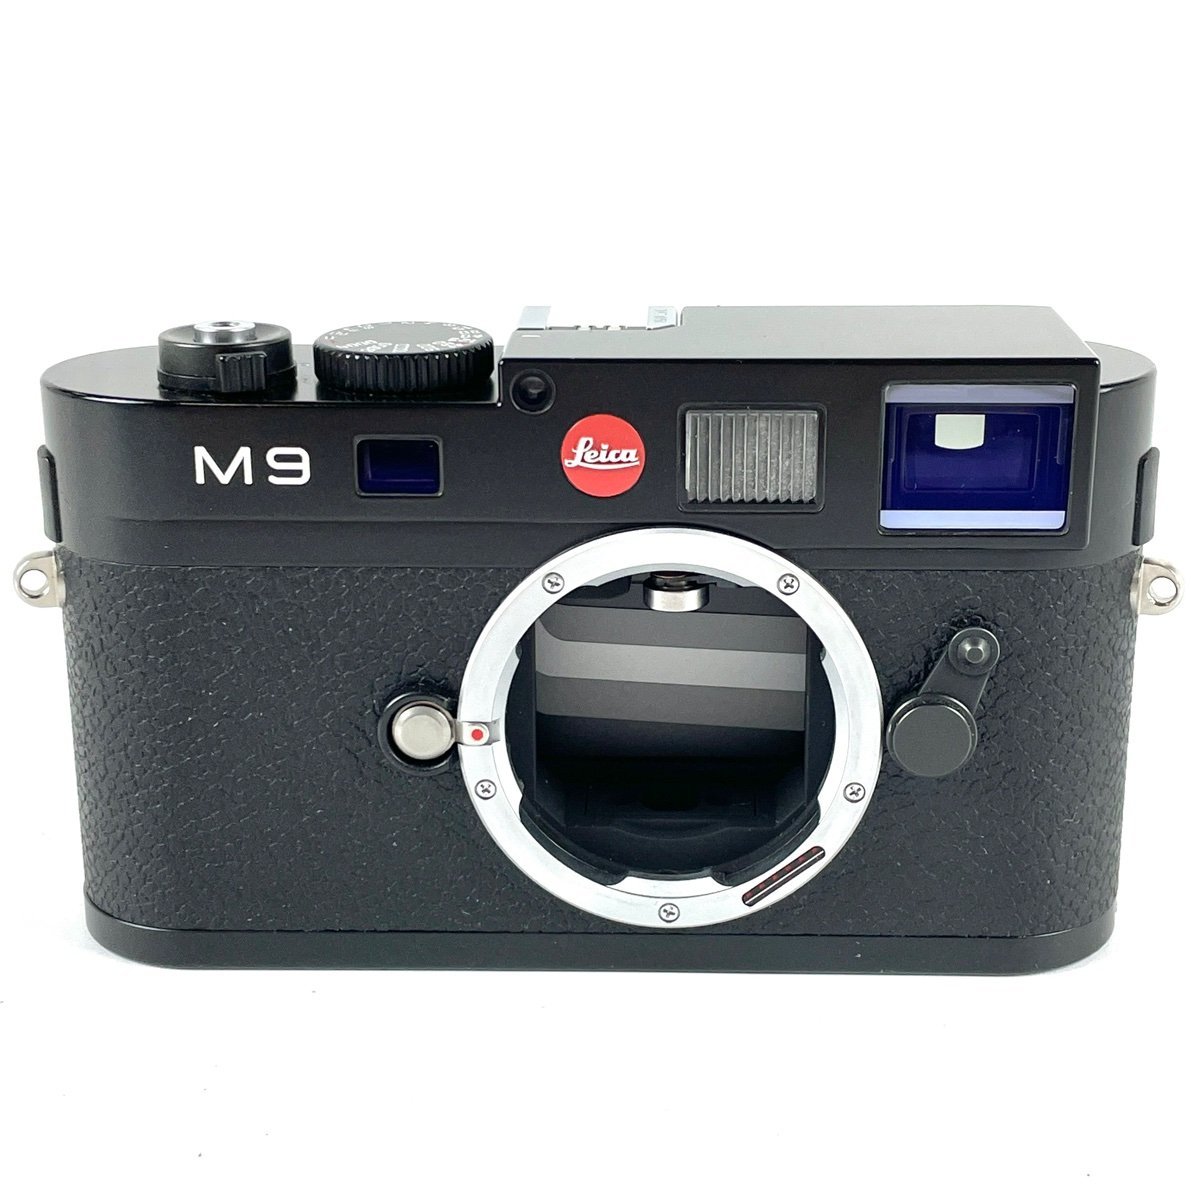 ライカ LEICA M9 ブラックペイント ボディ デジタル レンジファインダーカメラ